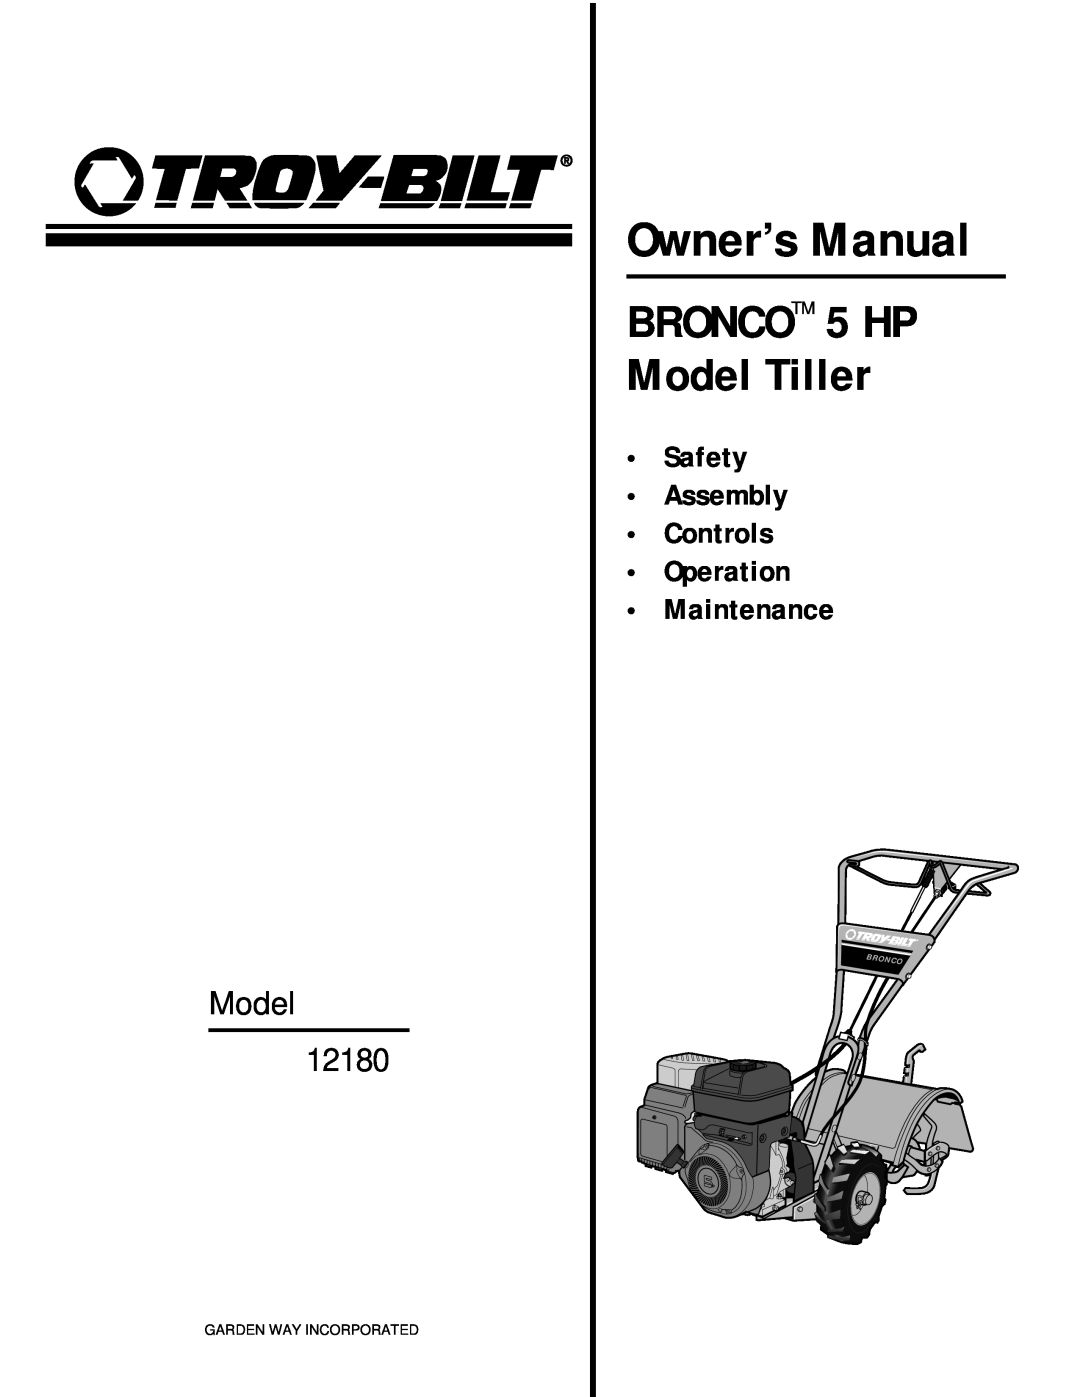 Bolens owner manual Safety Assembly Controls Operation Maintenance, BRONCOTM 5 HP Model Tiller, Model 12180 